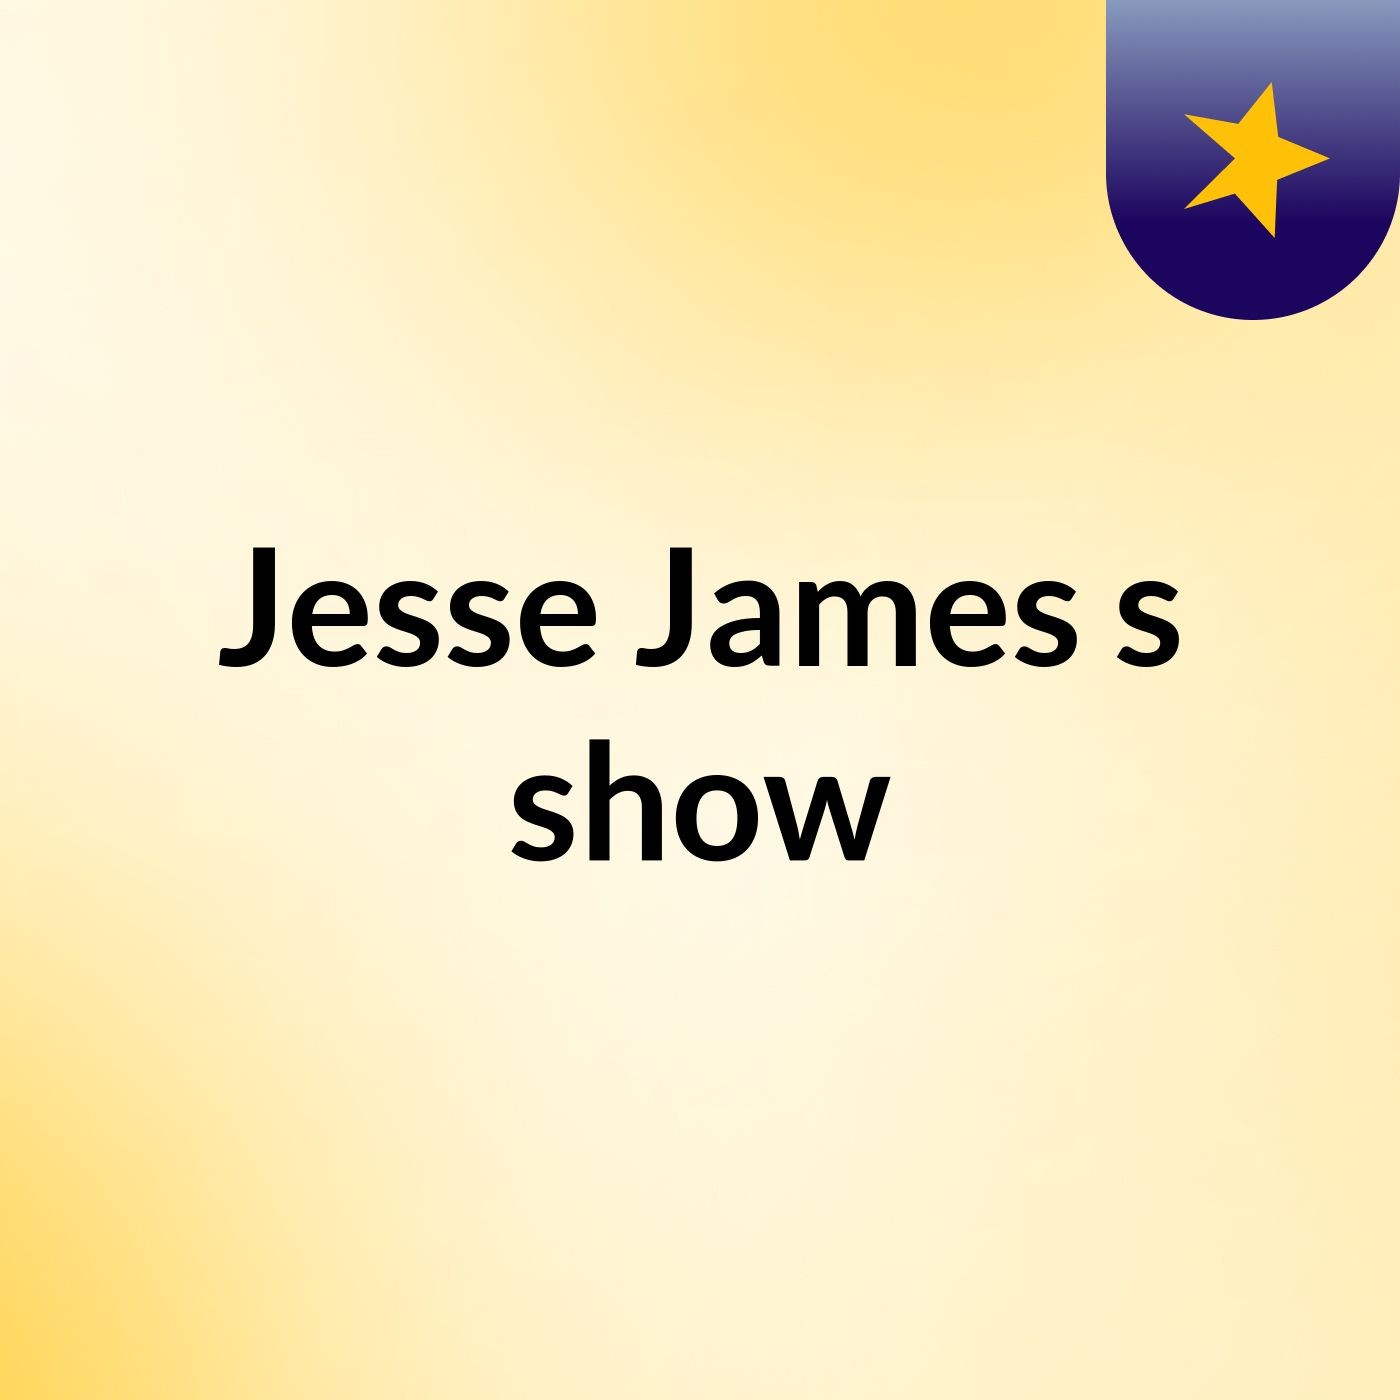 Jesse James's show